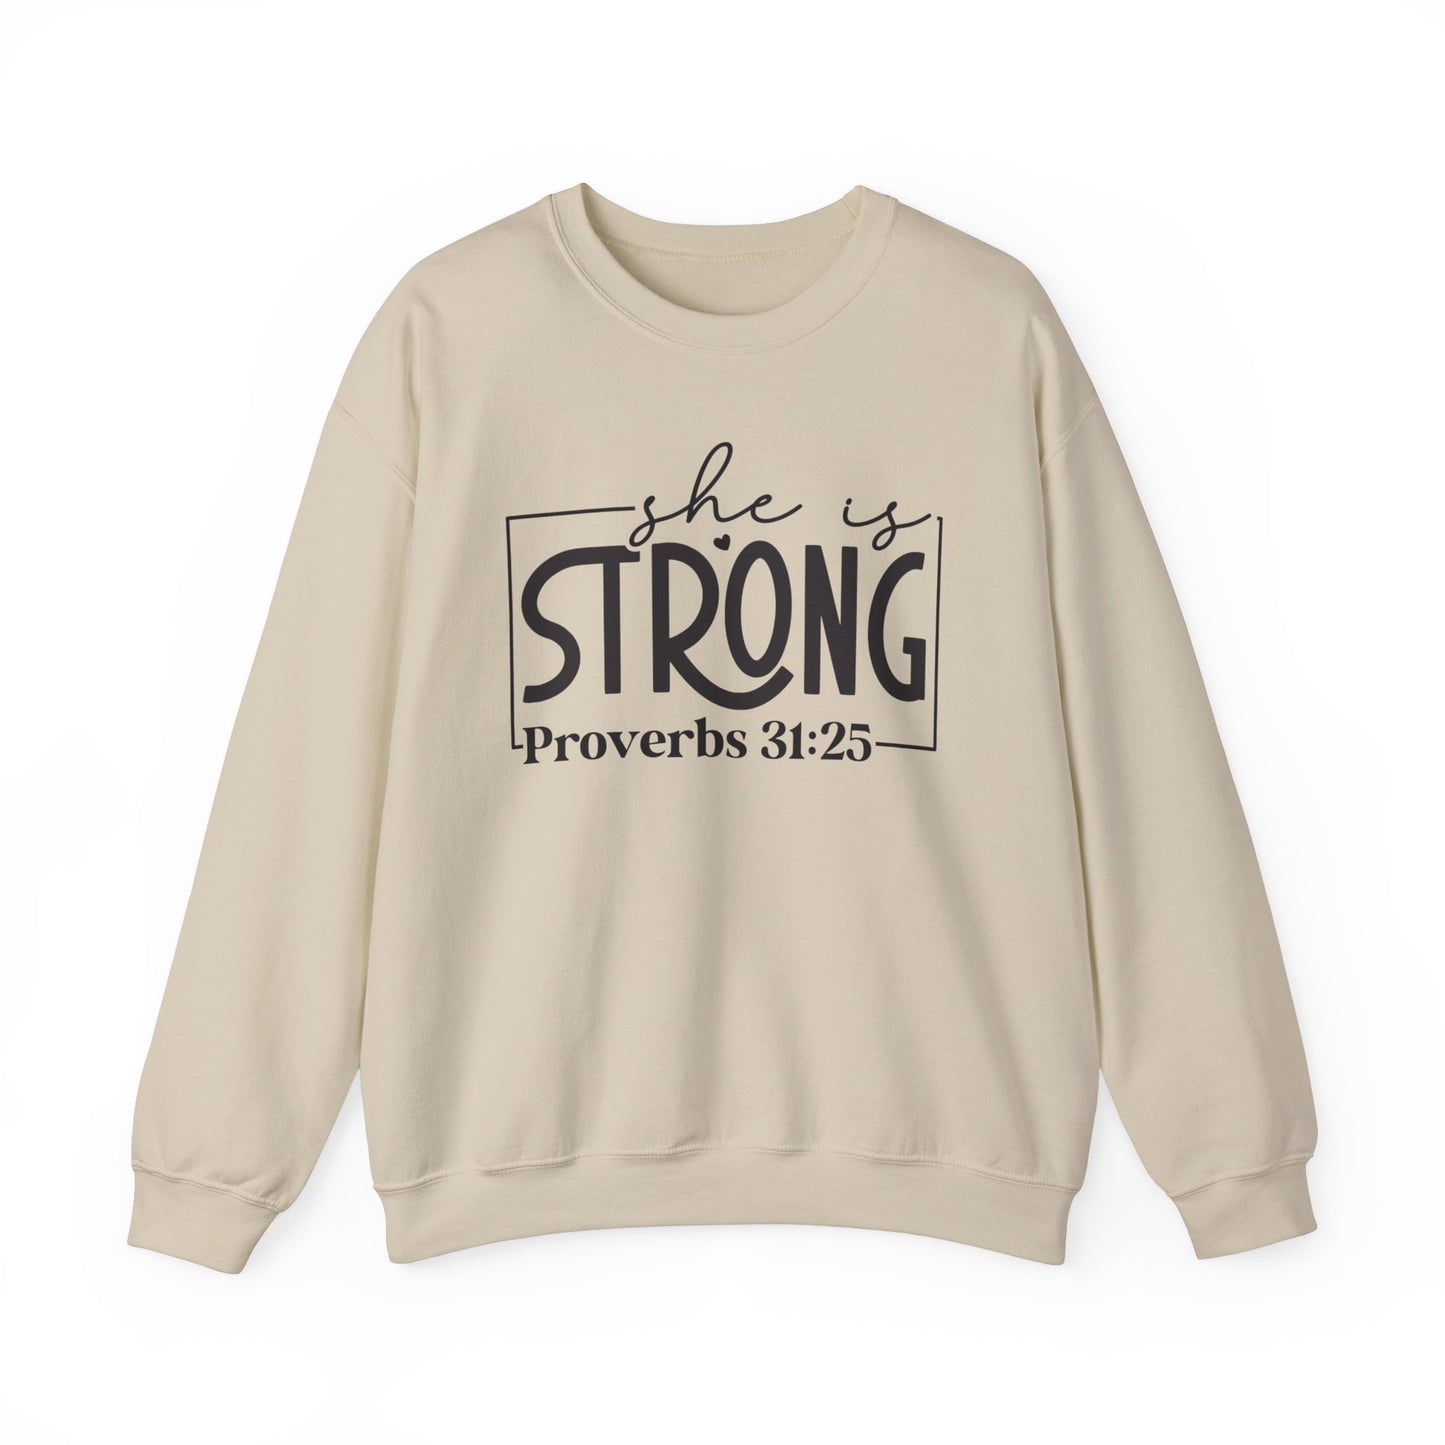 She is Strong Women's Bible Verse Sweatshirt